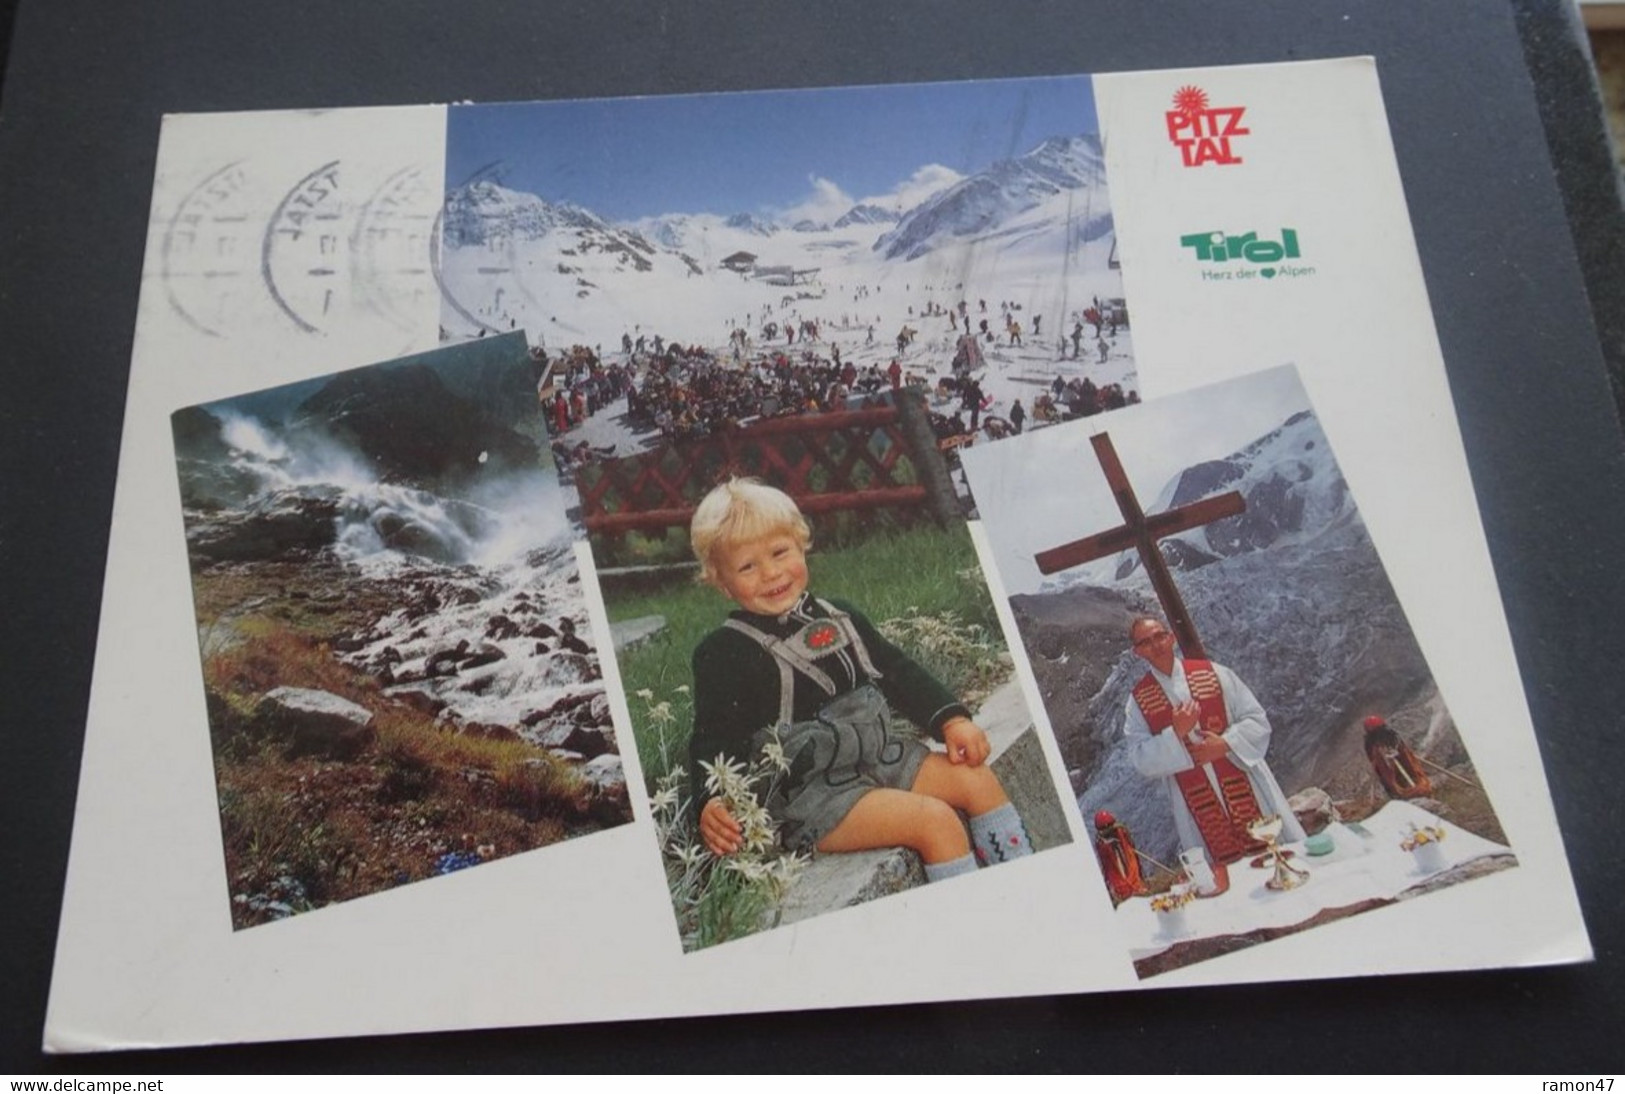 Pitztal - Tirol, Herz Der Alpen - Landeckfilm - Hubert Walterskirchen, Landeck - # 4/93 - Pitztal